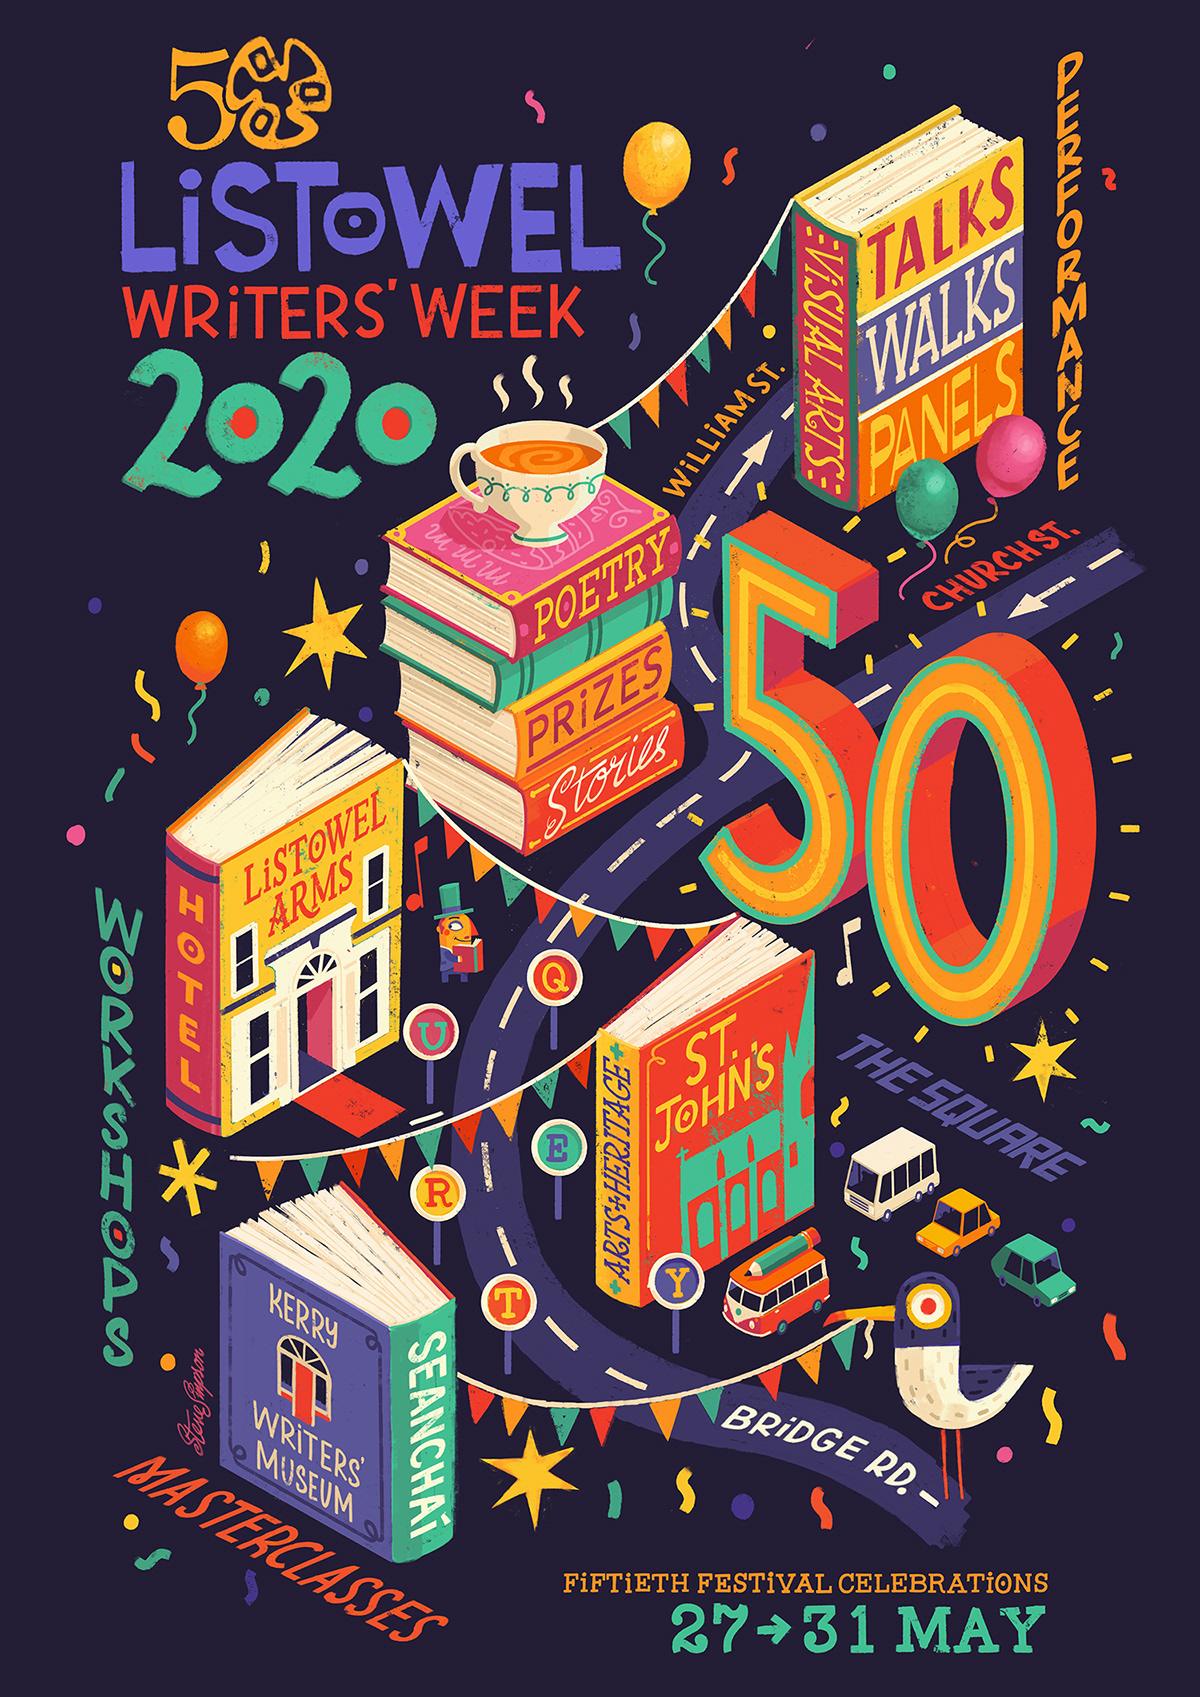 Listowel Writers' Week 2020 poster illustration by Steve Simpson